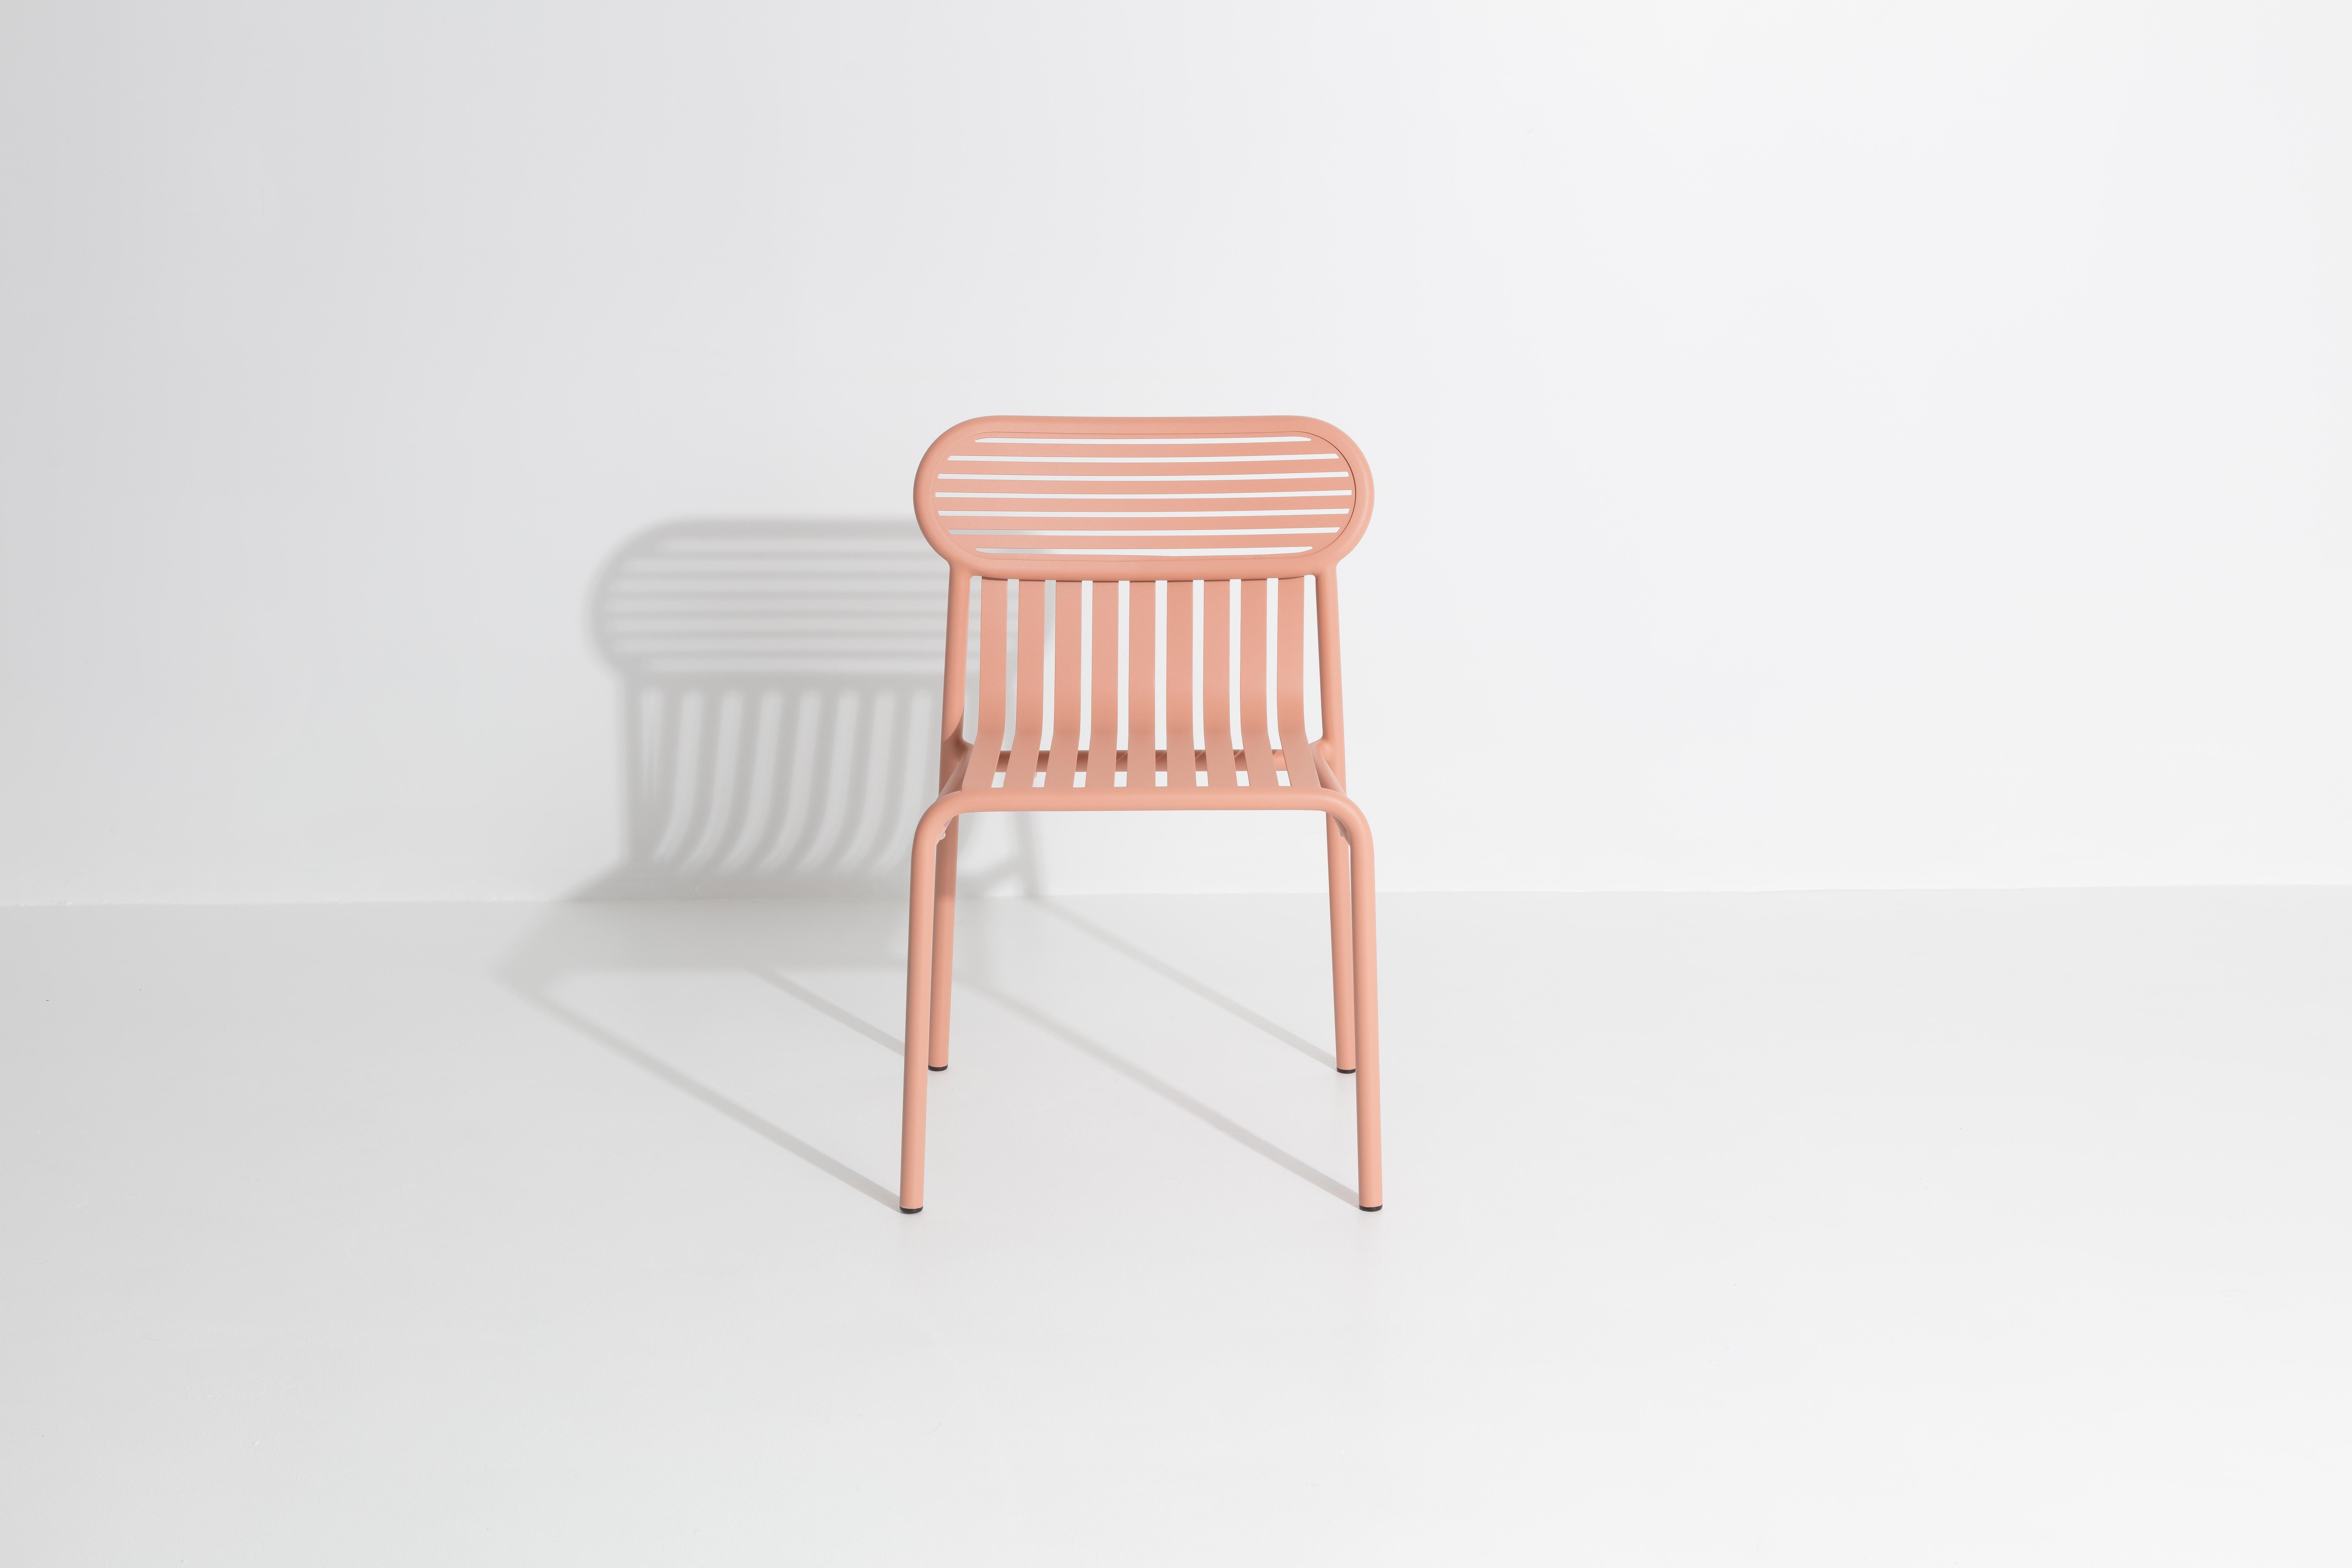 Petite Friture Week-End Chair en aluminium blush par Studio BrichetZiegler, 2017

La collection week-end est une gamme complète de mobilier d'extérieur, en peinture époxy aluminium grainé, finition mate, qui comprend 18 fonctions et 8 couleurs